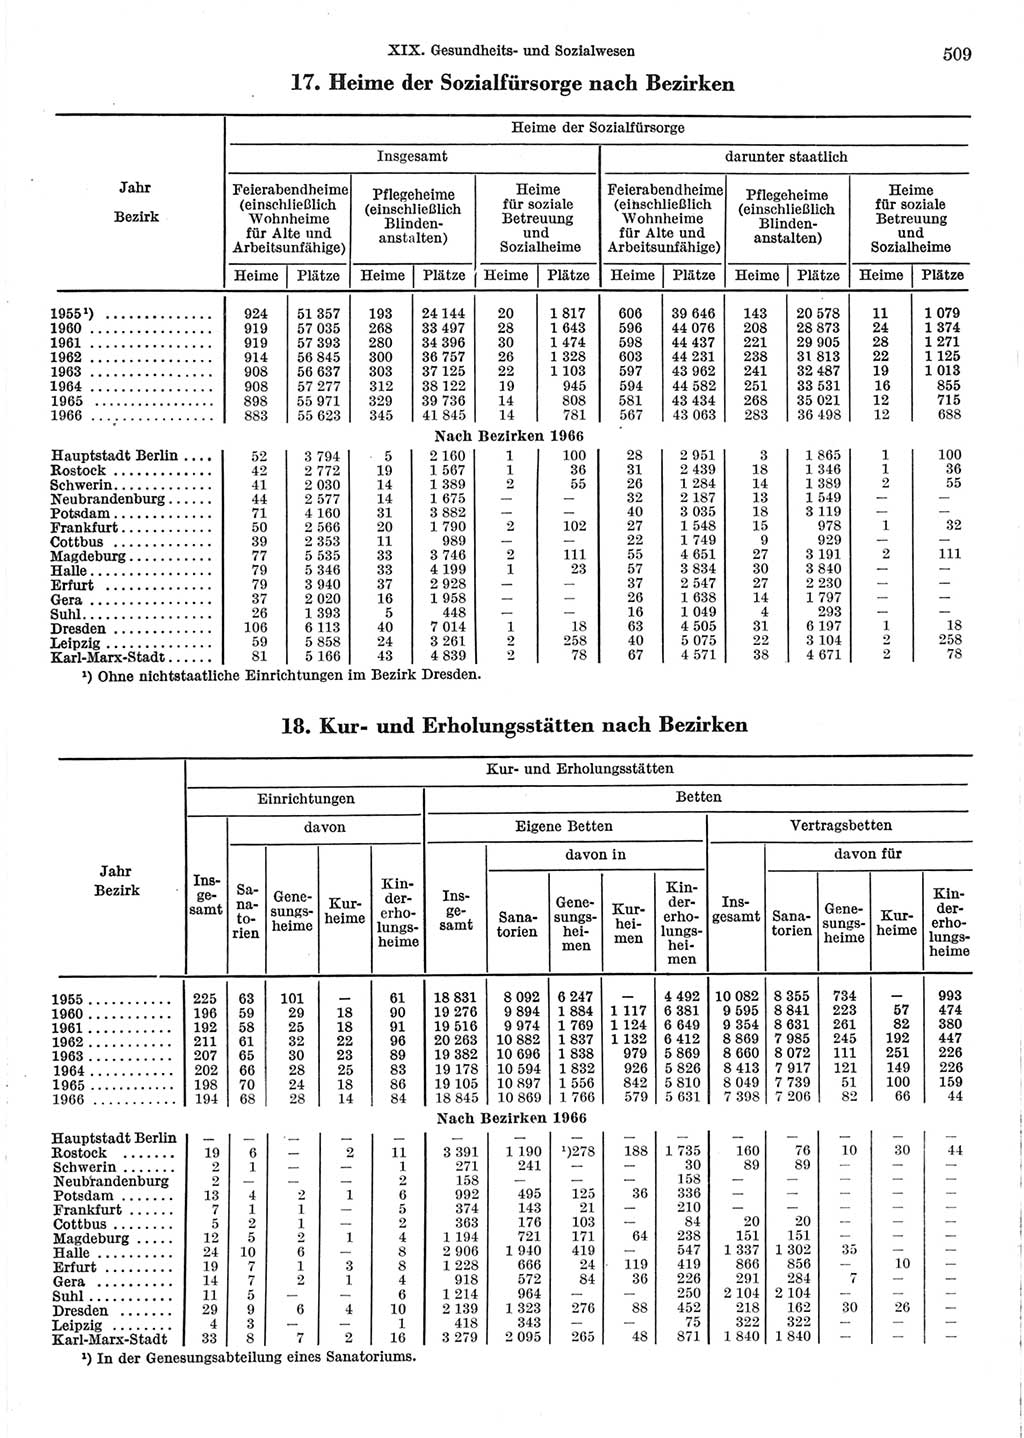 Statistisches Jahrbuch der Deutschen Demokratischen Republik (DDR) 1967, Seite 509 (Stat. Jb. DDR 1967, S. 509)